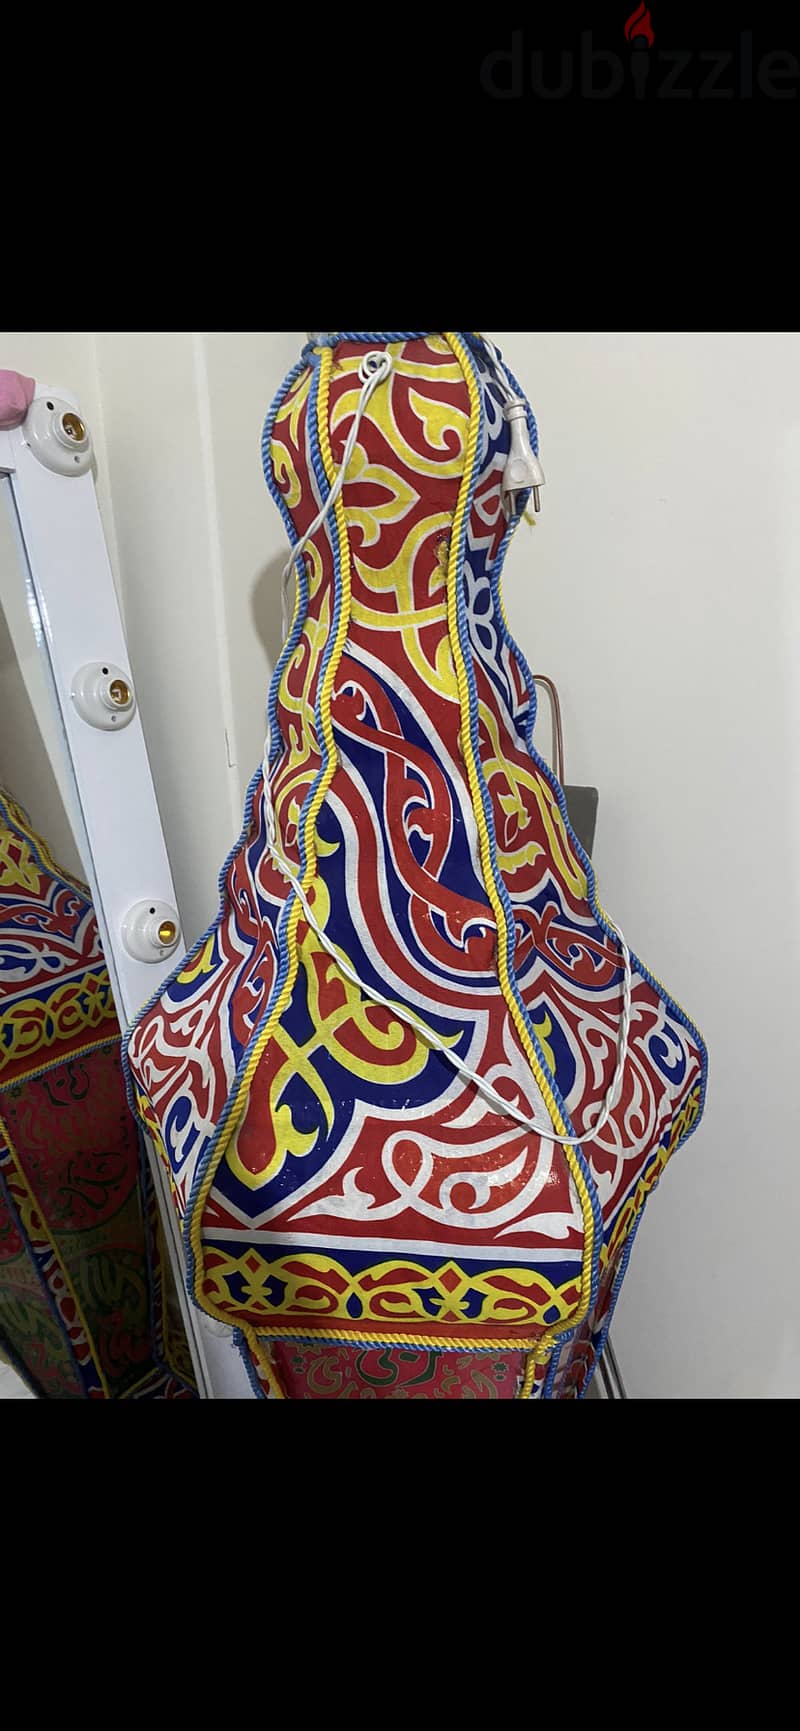 فانوس رمضان جسم حديد و زجاج طول ٢ متر كبير جدا حاله ممتازه 2